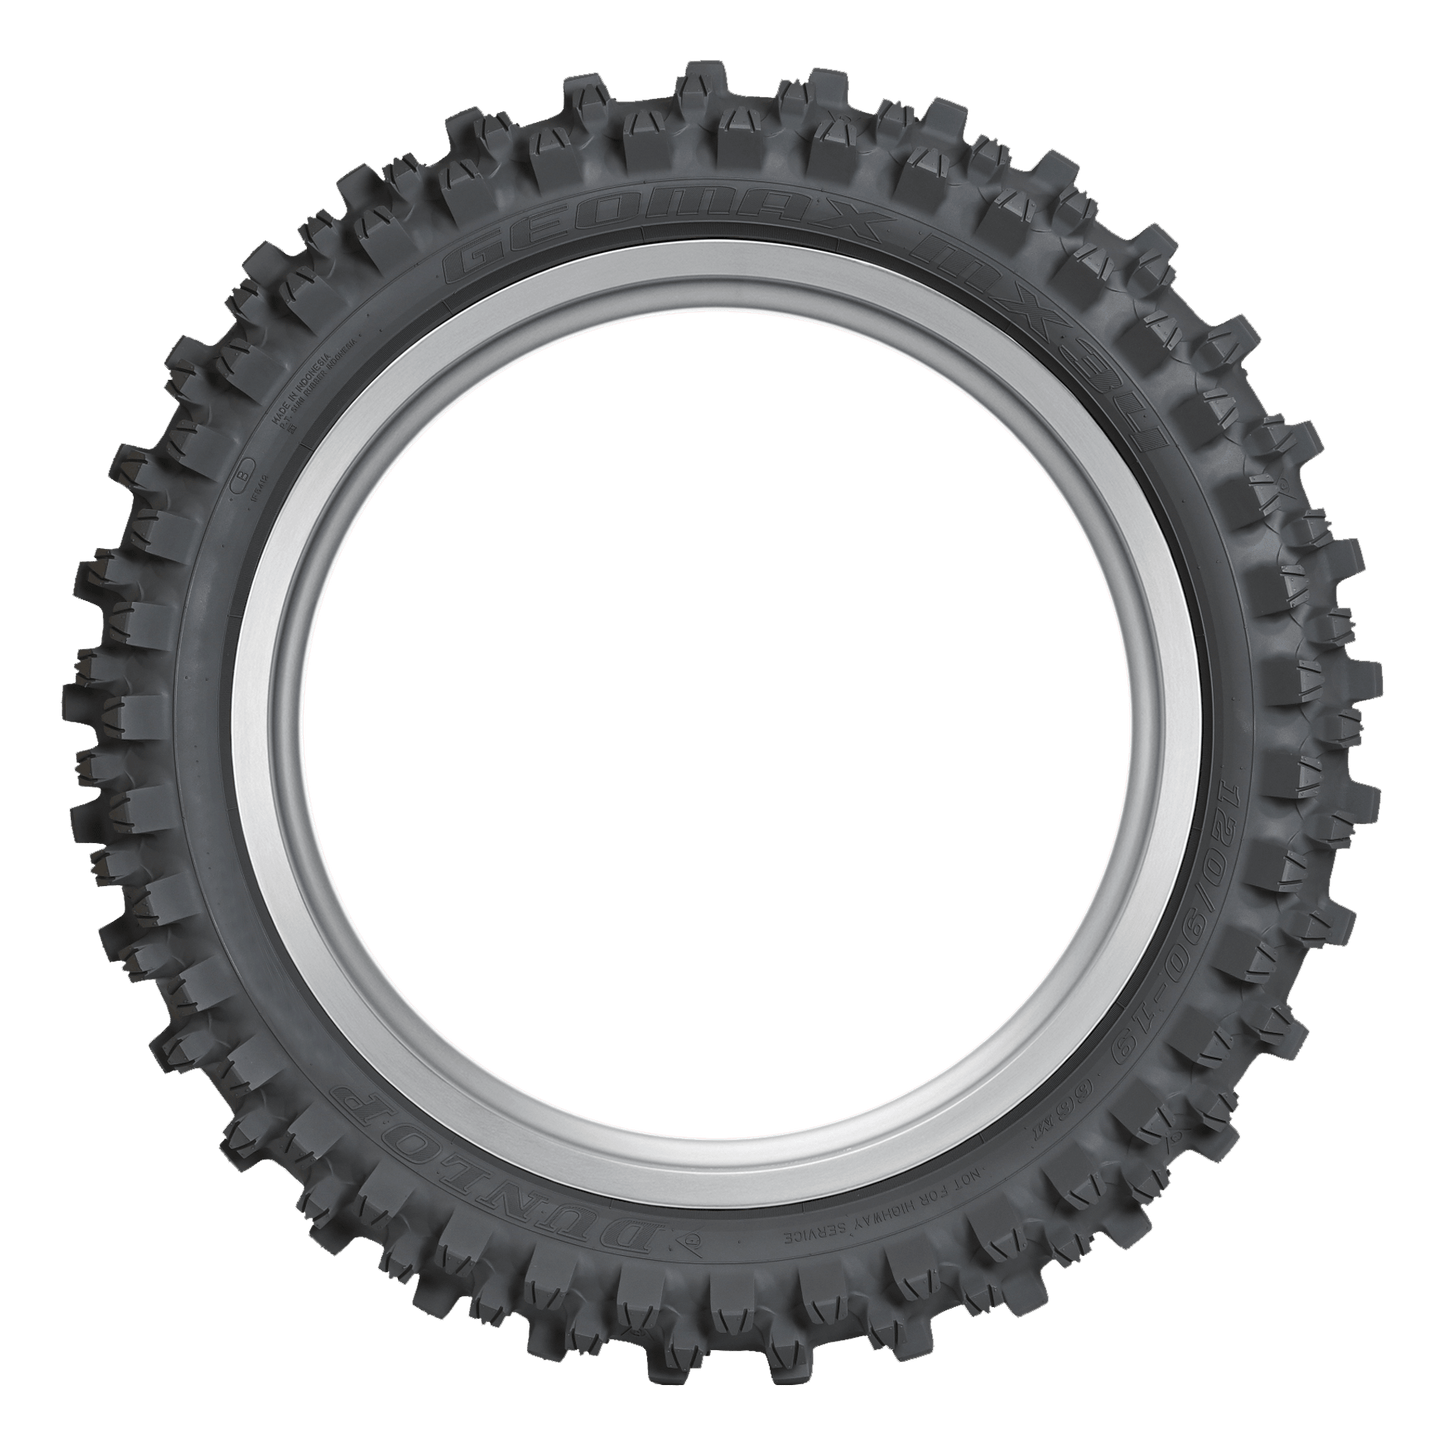 Dunlop MX34 Geomax Soft/Intermediate Tires